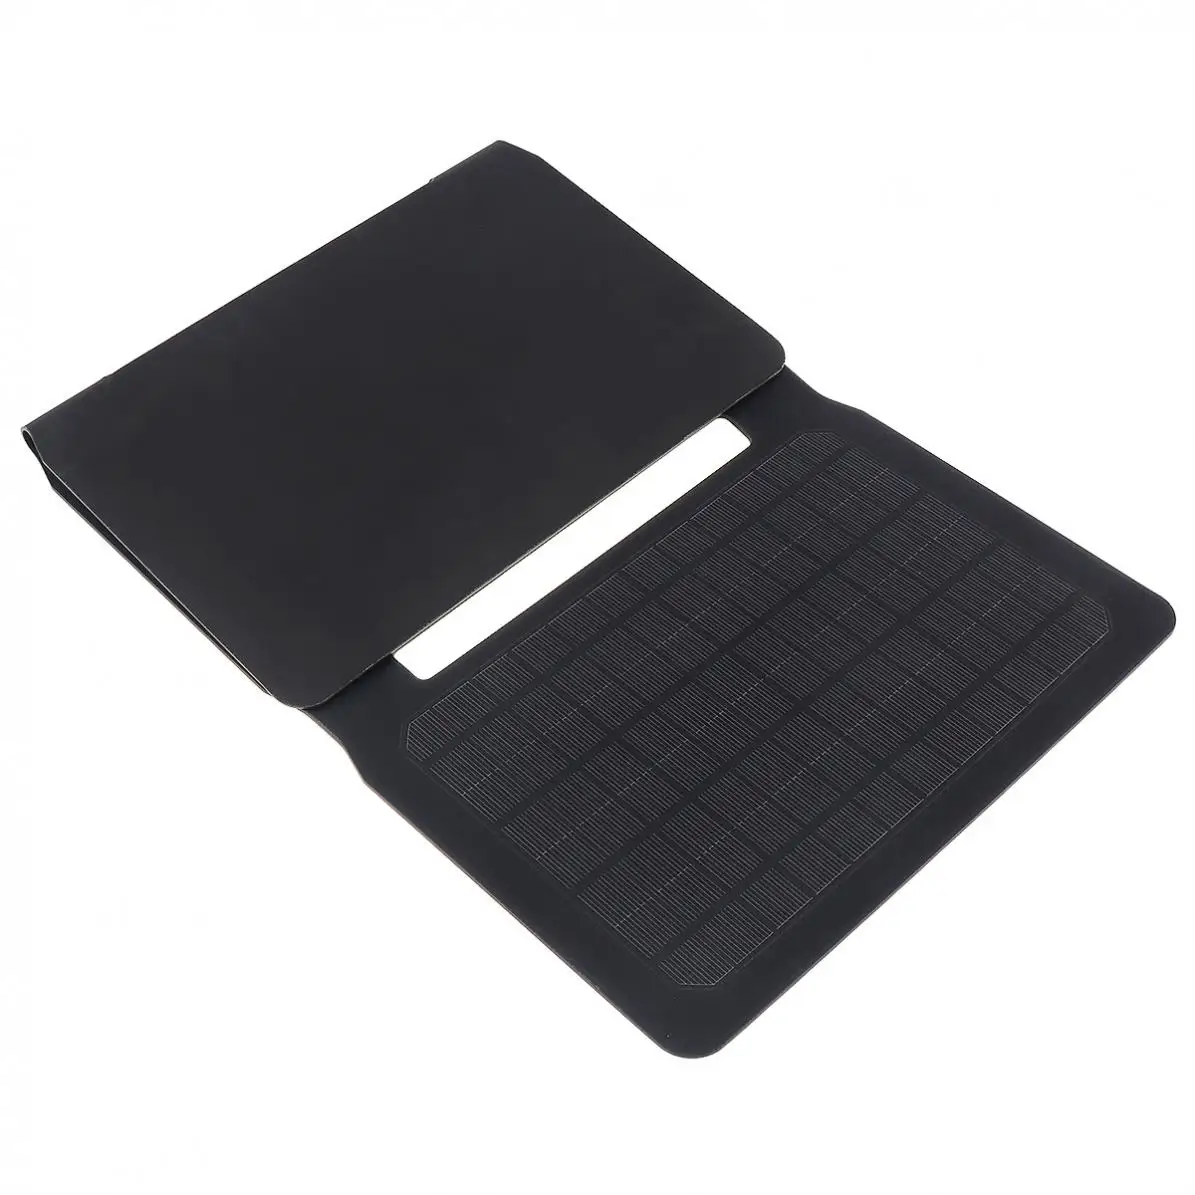 ABKM Горячие Soshine солнечные зарядные устройства 20 Вт солнечная панель с двойным usb-портом водонепроницаемые складные зарядные устройства для Iphone/Ipad/Galaxy/N